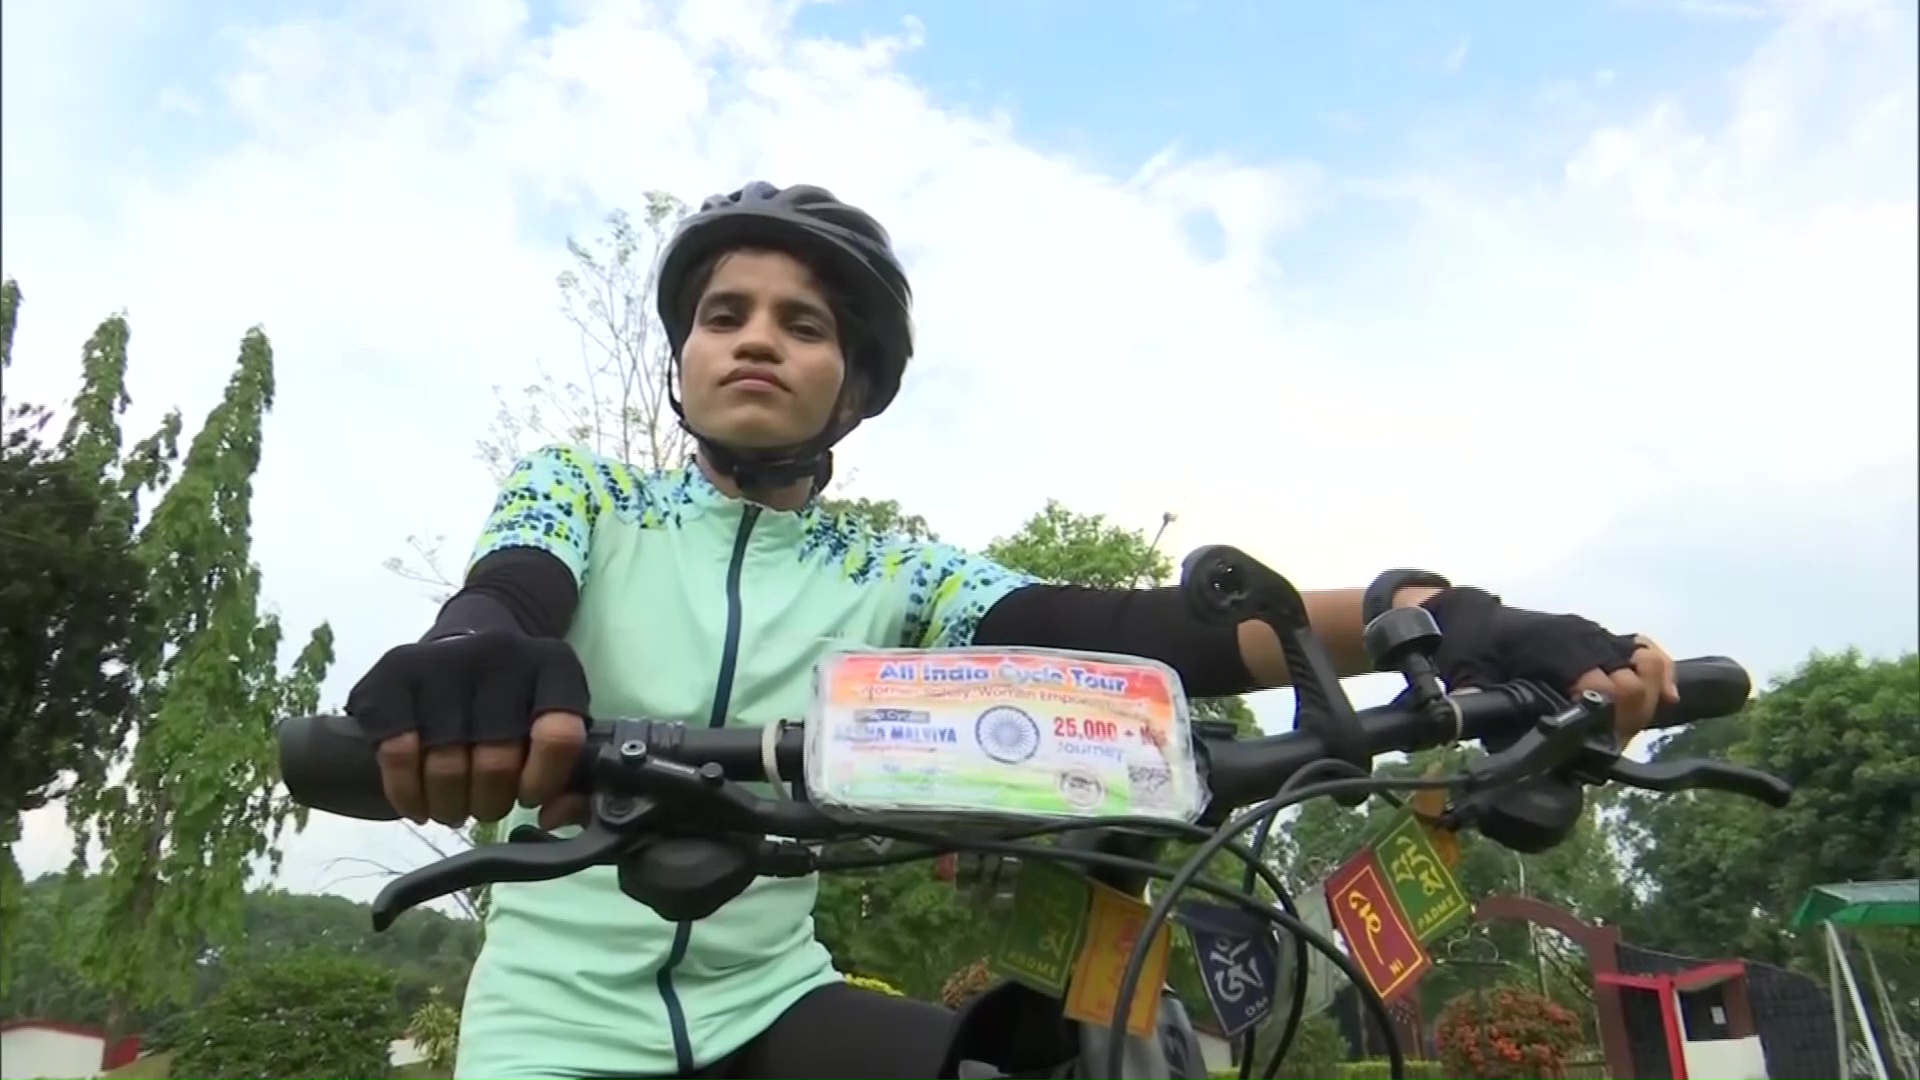 MP solo cyclist Aasha Malviya